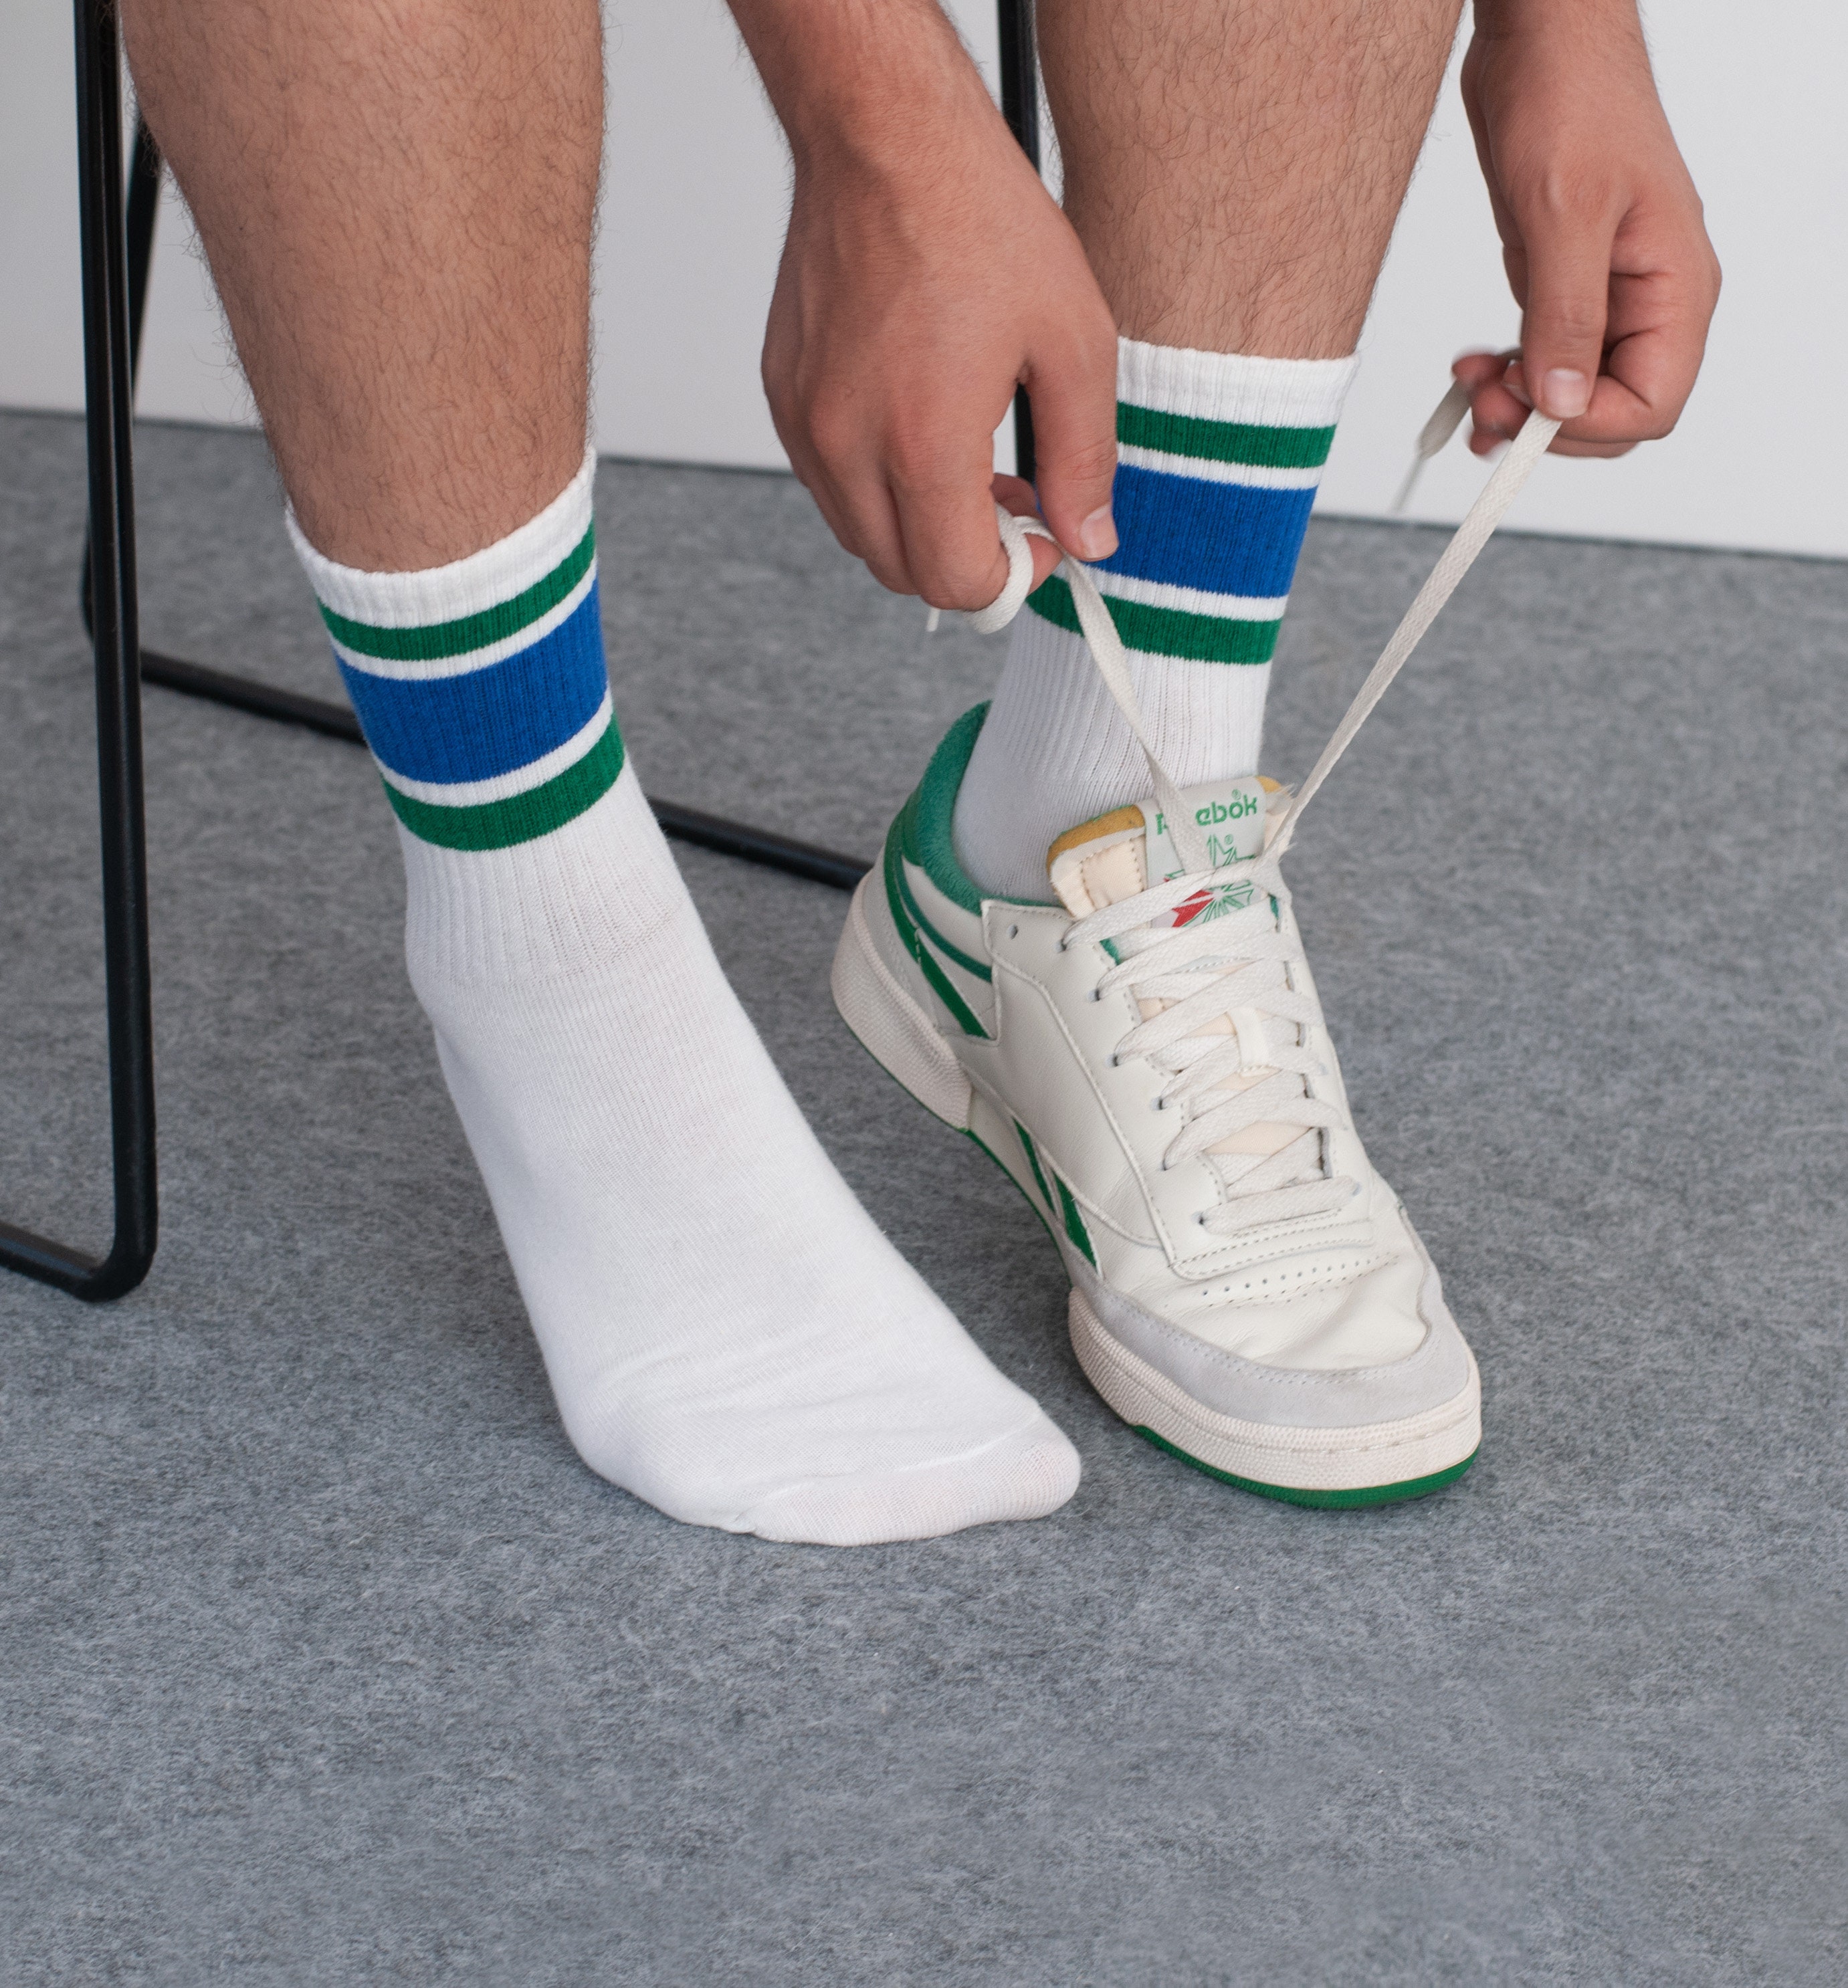 10 pares de calcetines tobilleros para hombre cómodos que absorben